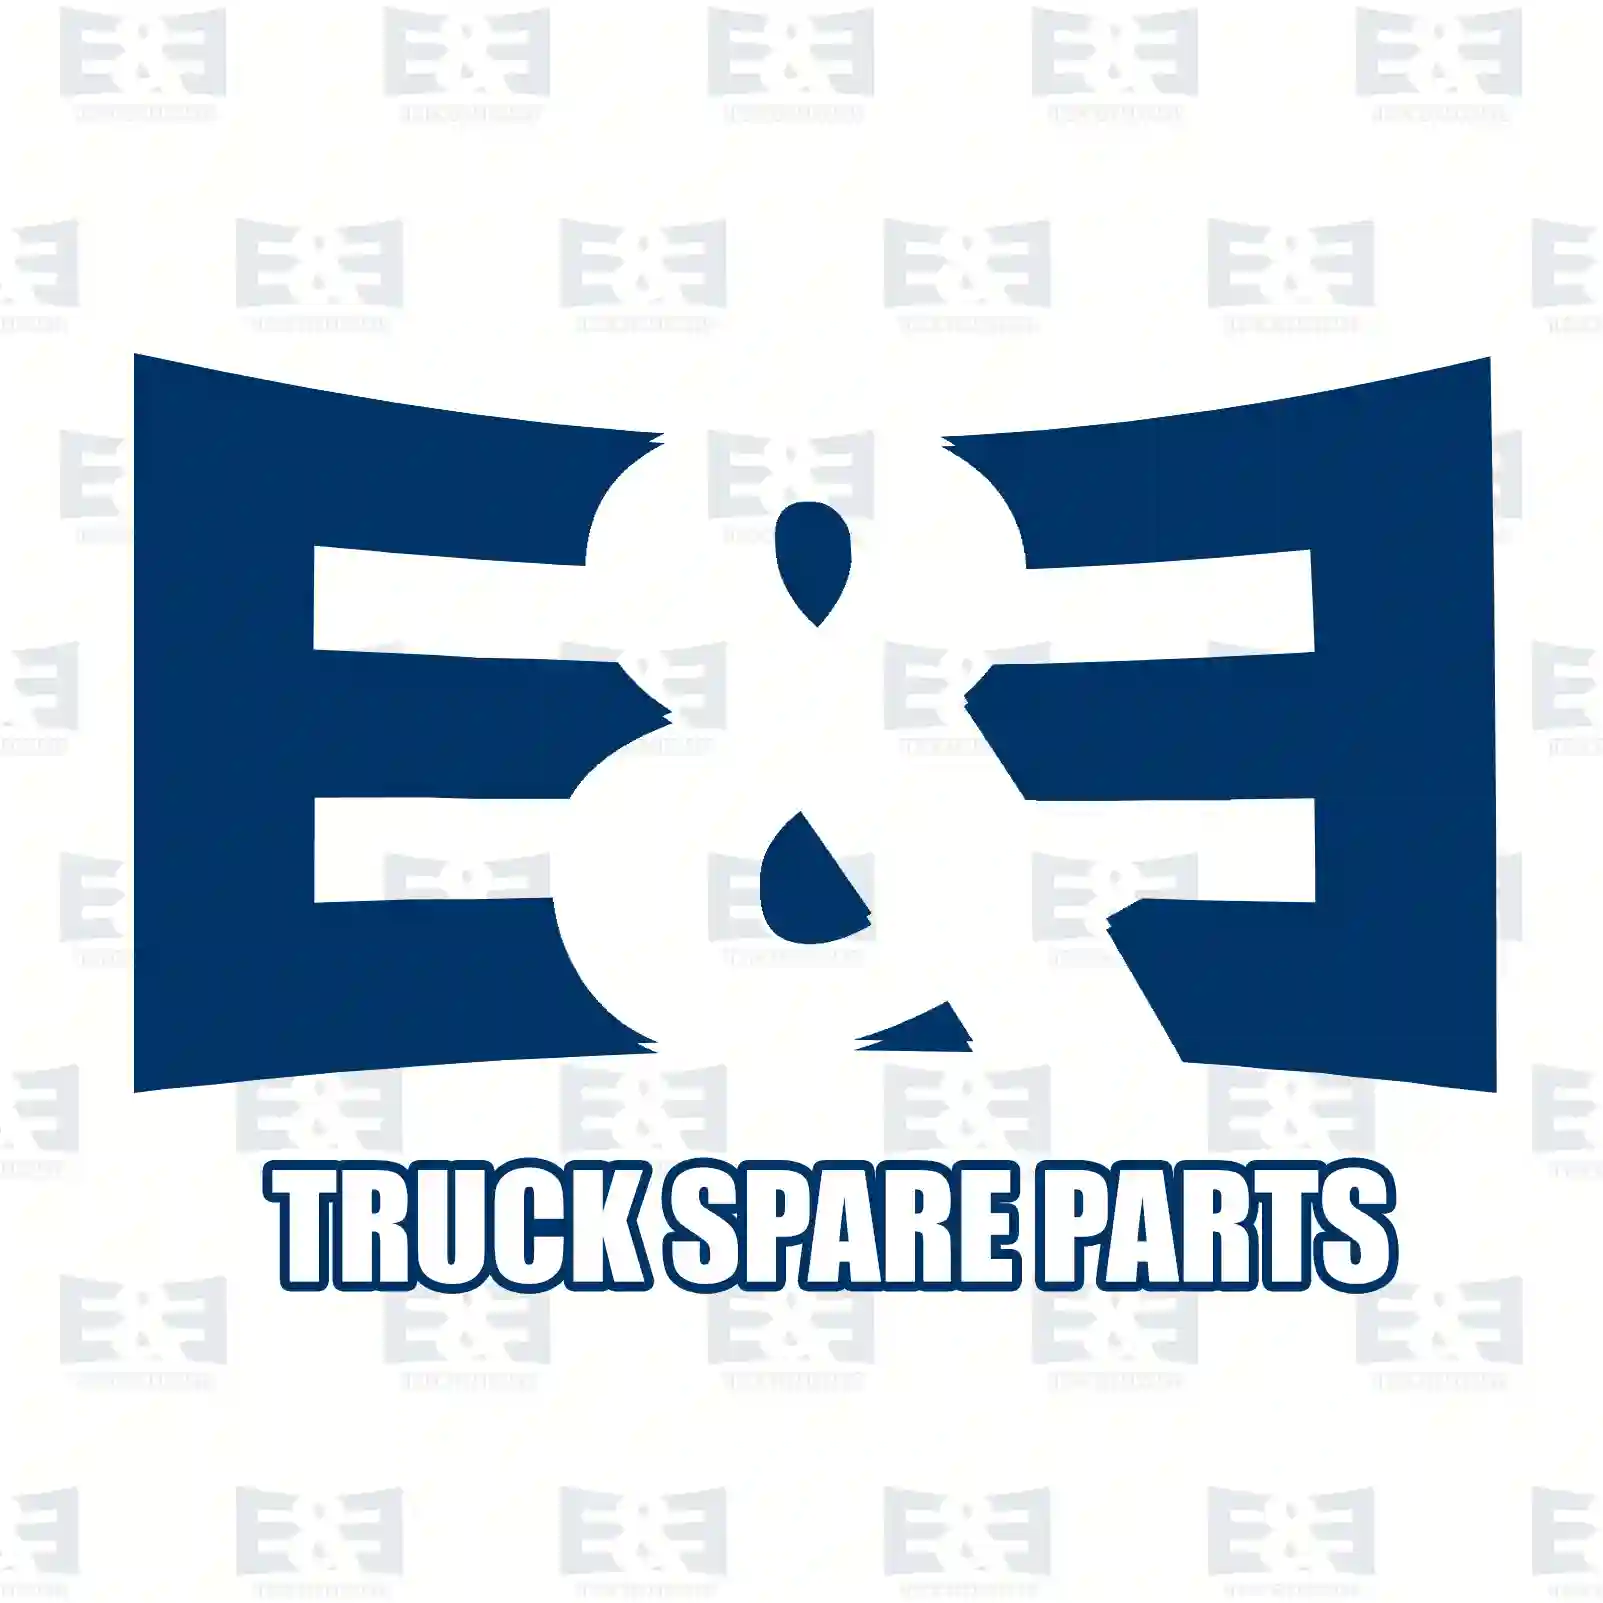 Stabilizer stay, front, 2E2283875, 93197325, 54616-00Q0E, 4419291, 546180004R ||  2E2283875 E&E Truck Spare Parts | Truck Spare Parts, Auotomotive Spare Parts Stabilizer stay, front, 2E2283875, 93197325, 54616-00Q0E, 4419291, 546180004R ||  2E2283875 E&E Truck Spare Parts | Truck Spare Parts, Auotomotive Spare Parts